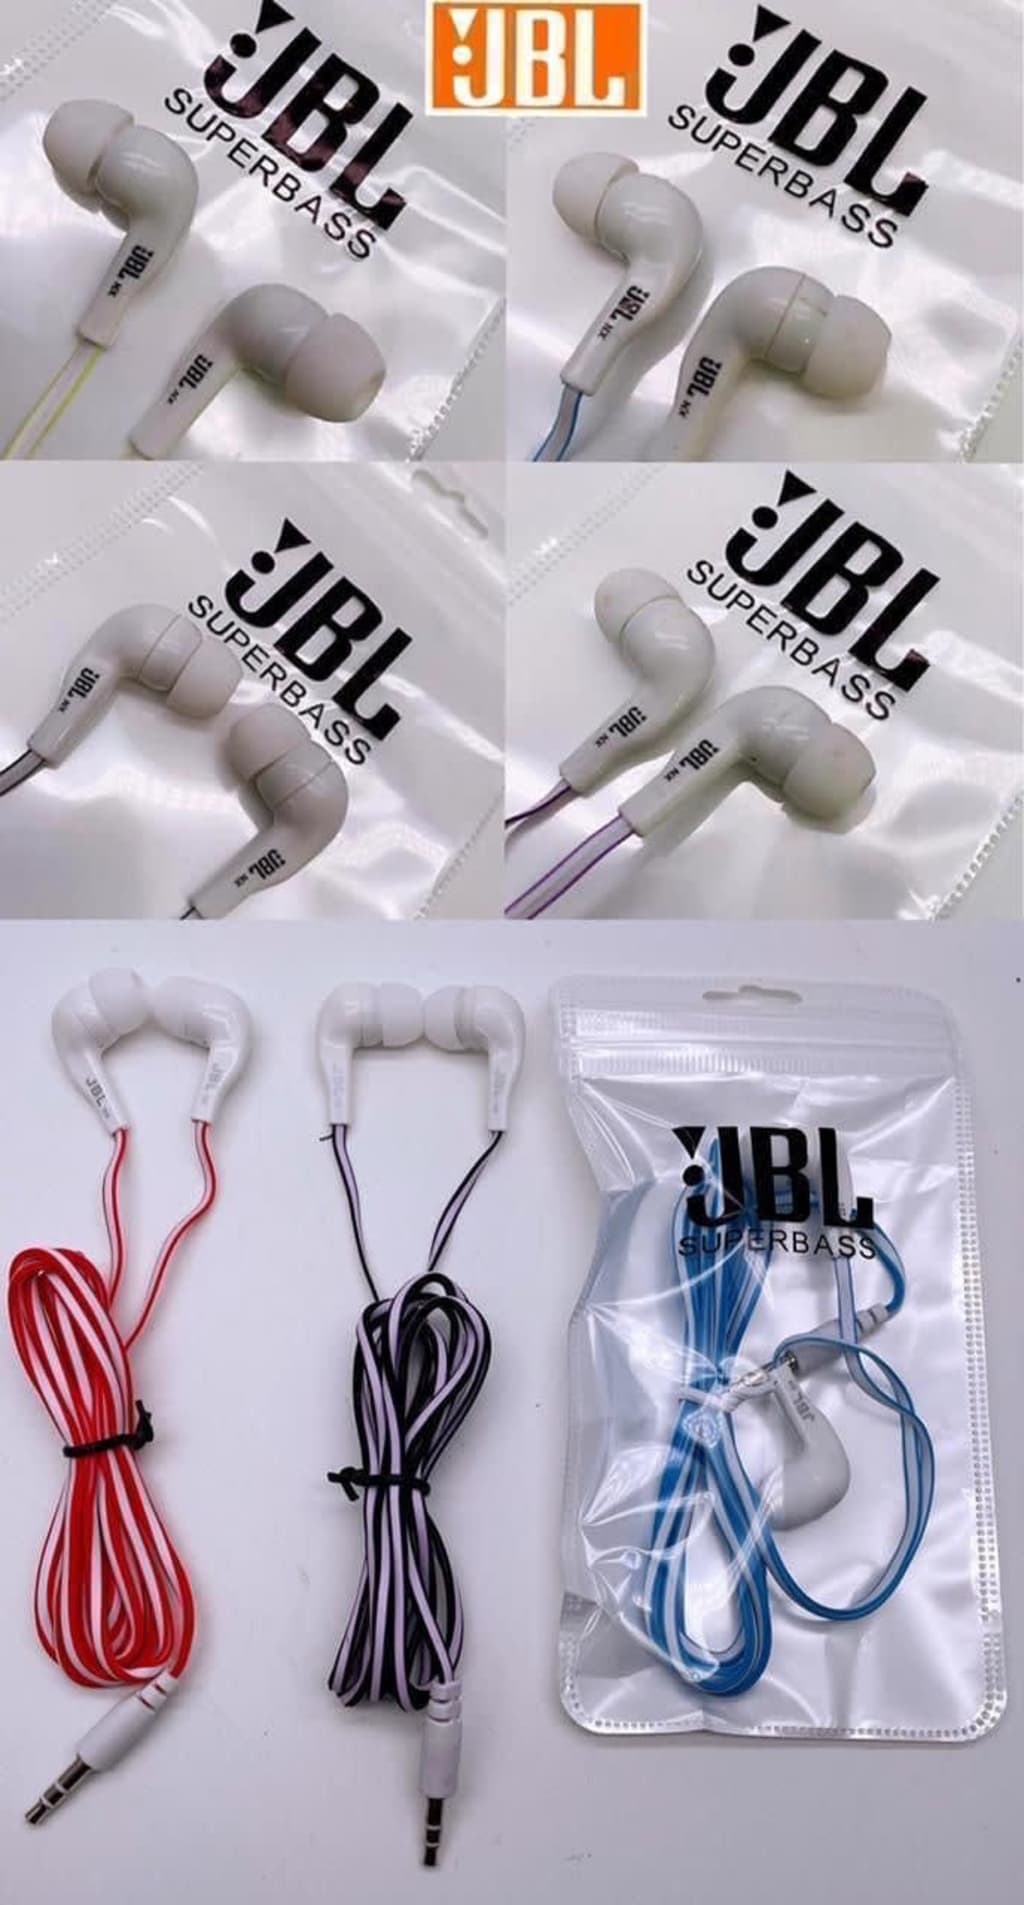 HANDSFREE JBL MP3 di qeong.com